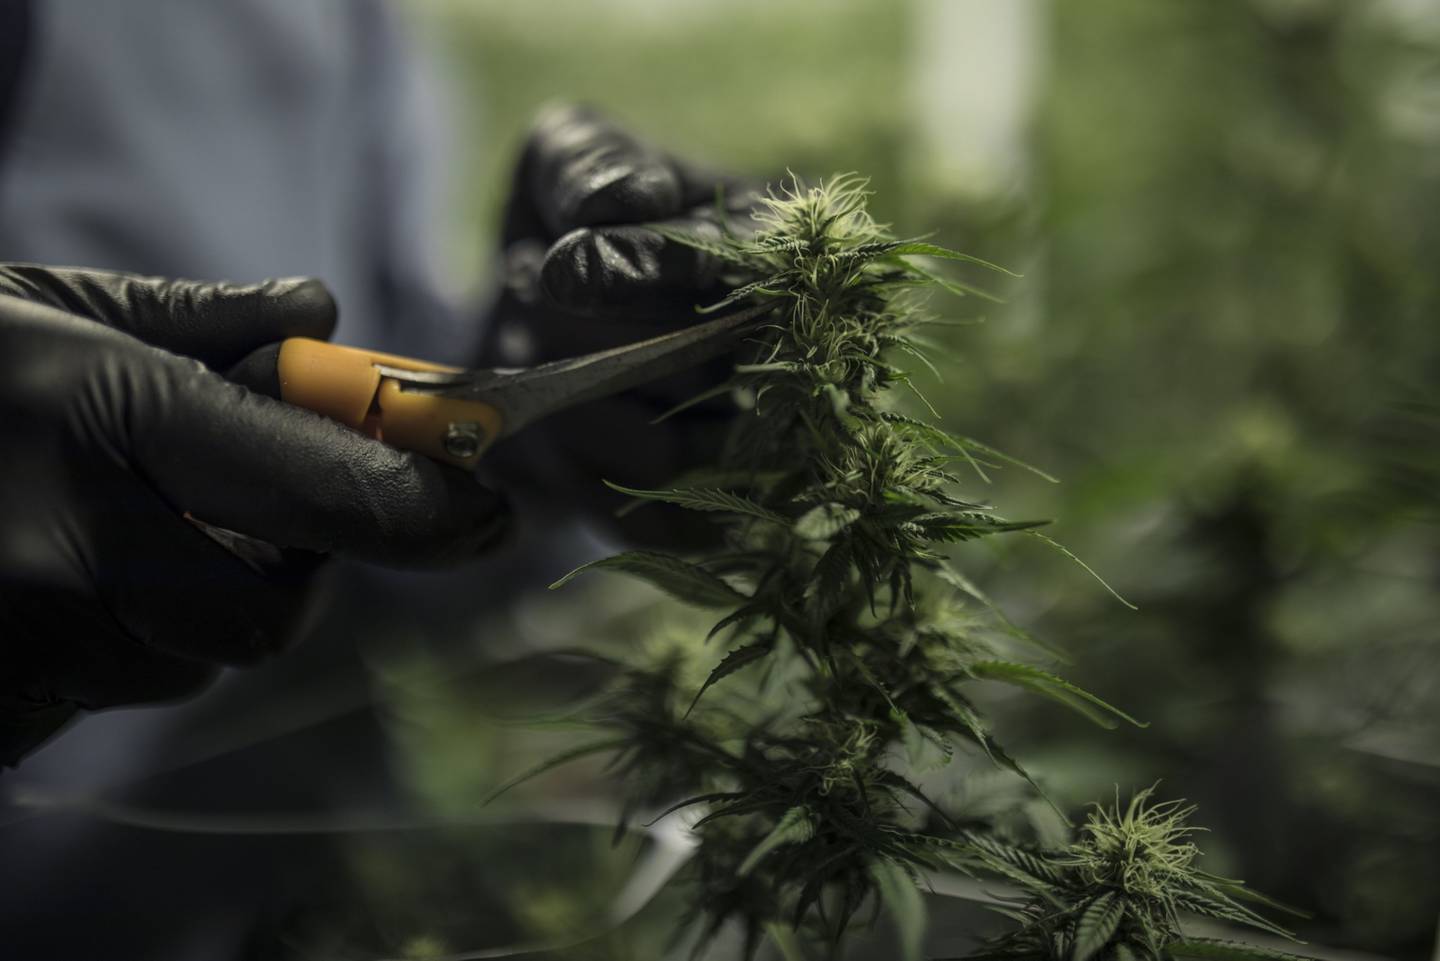 Un trabajador con equipo de protección recorta una planta en las instalaciones de cultivo de cannabis medicinal de Pideka SAS en Tocancipa, Colombia.